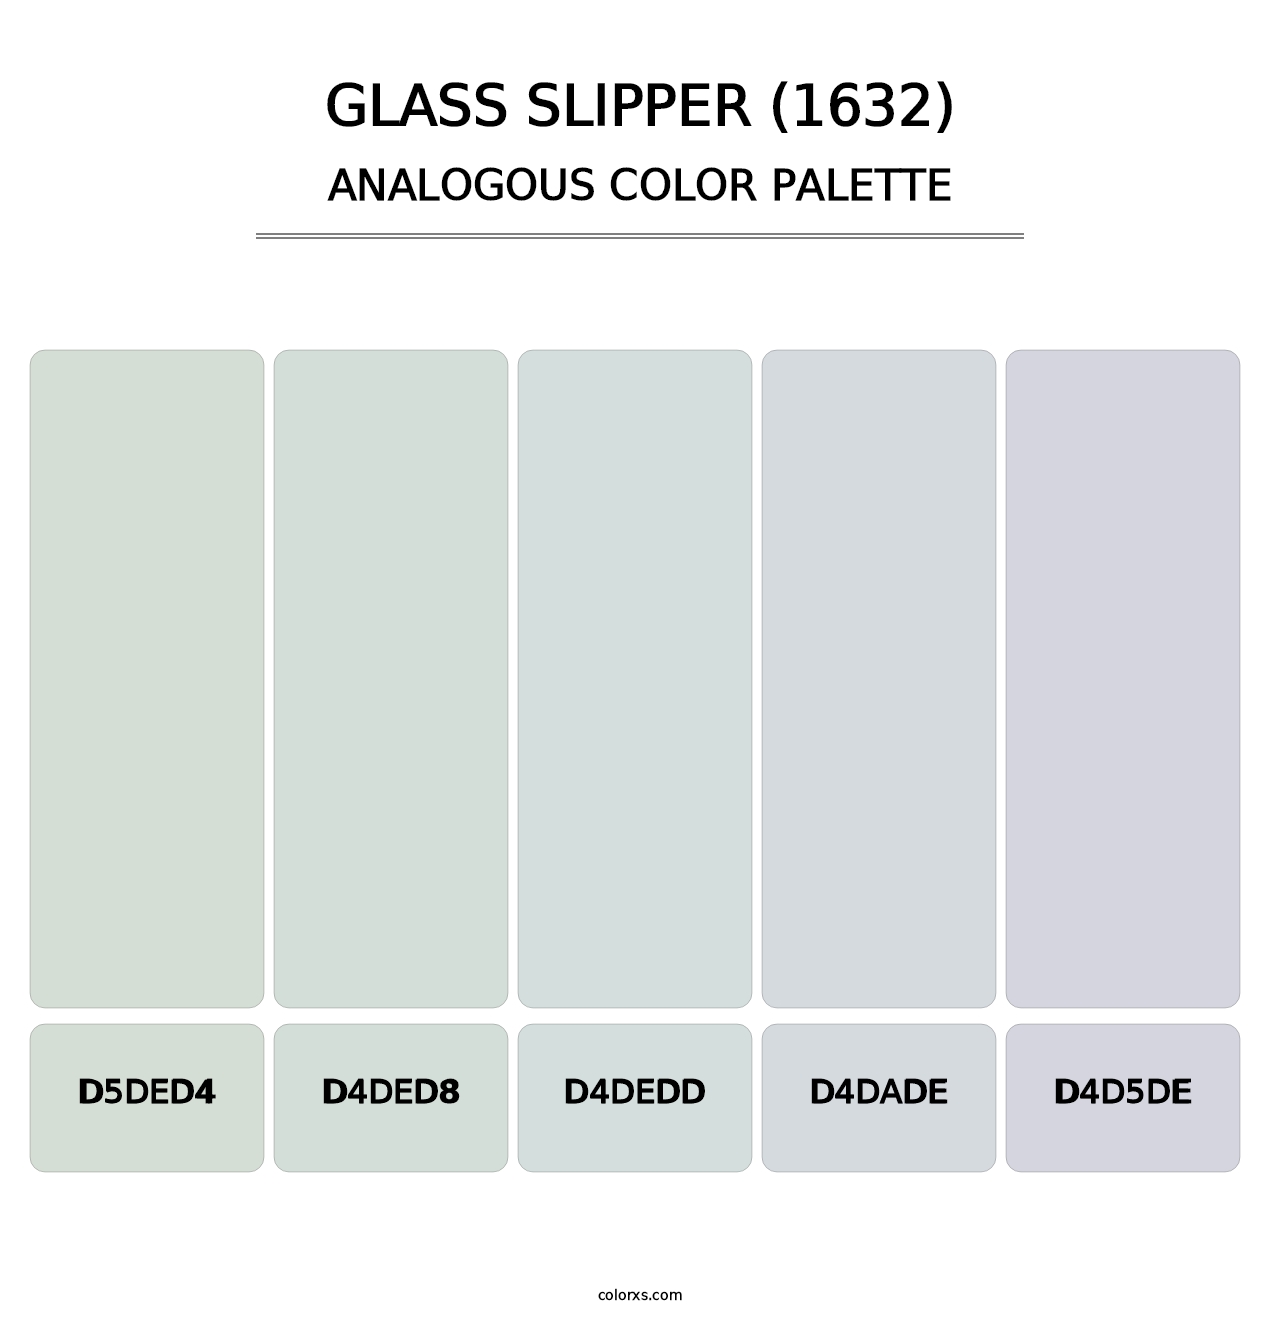 Glass Slipper (1632) - Analogous Color Palette